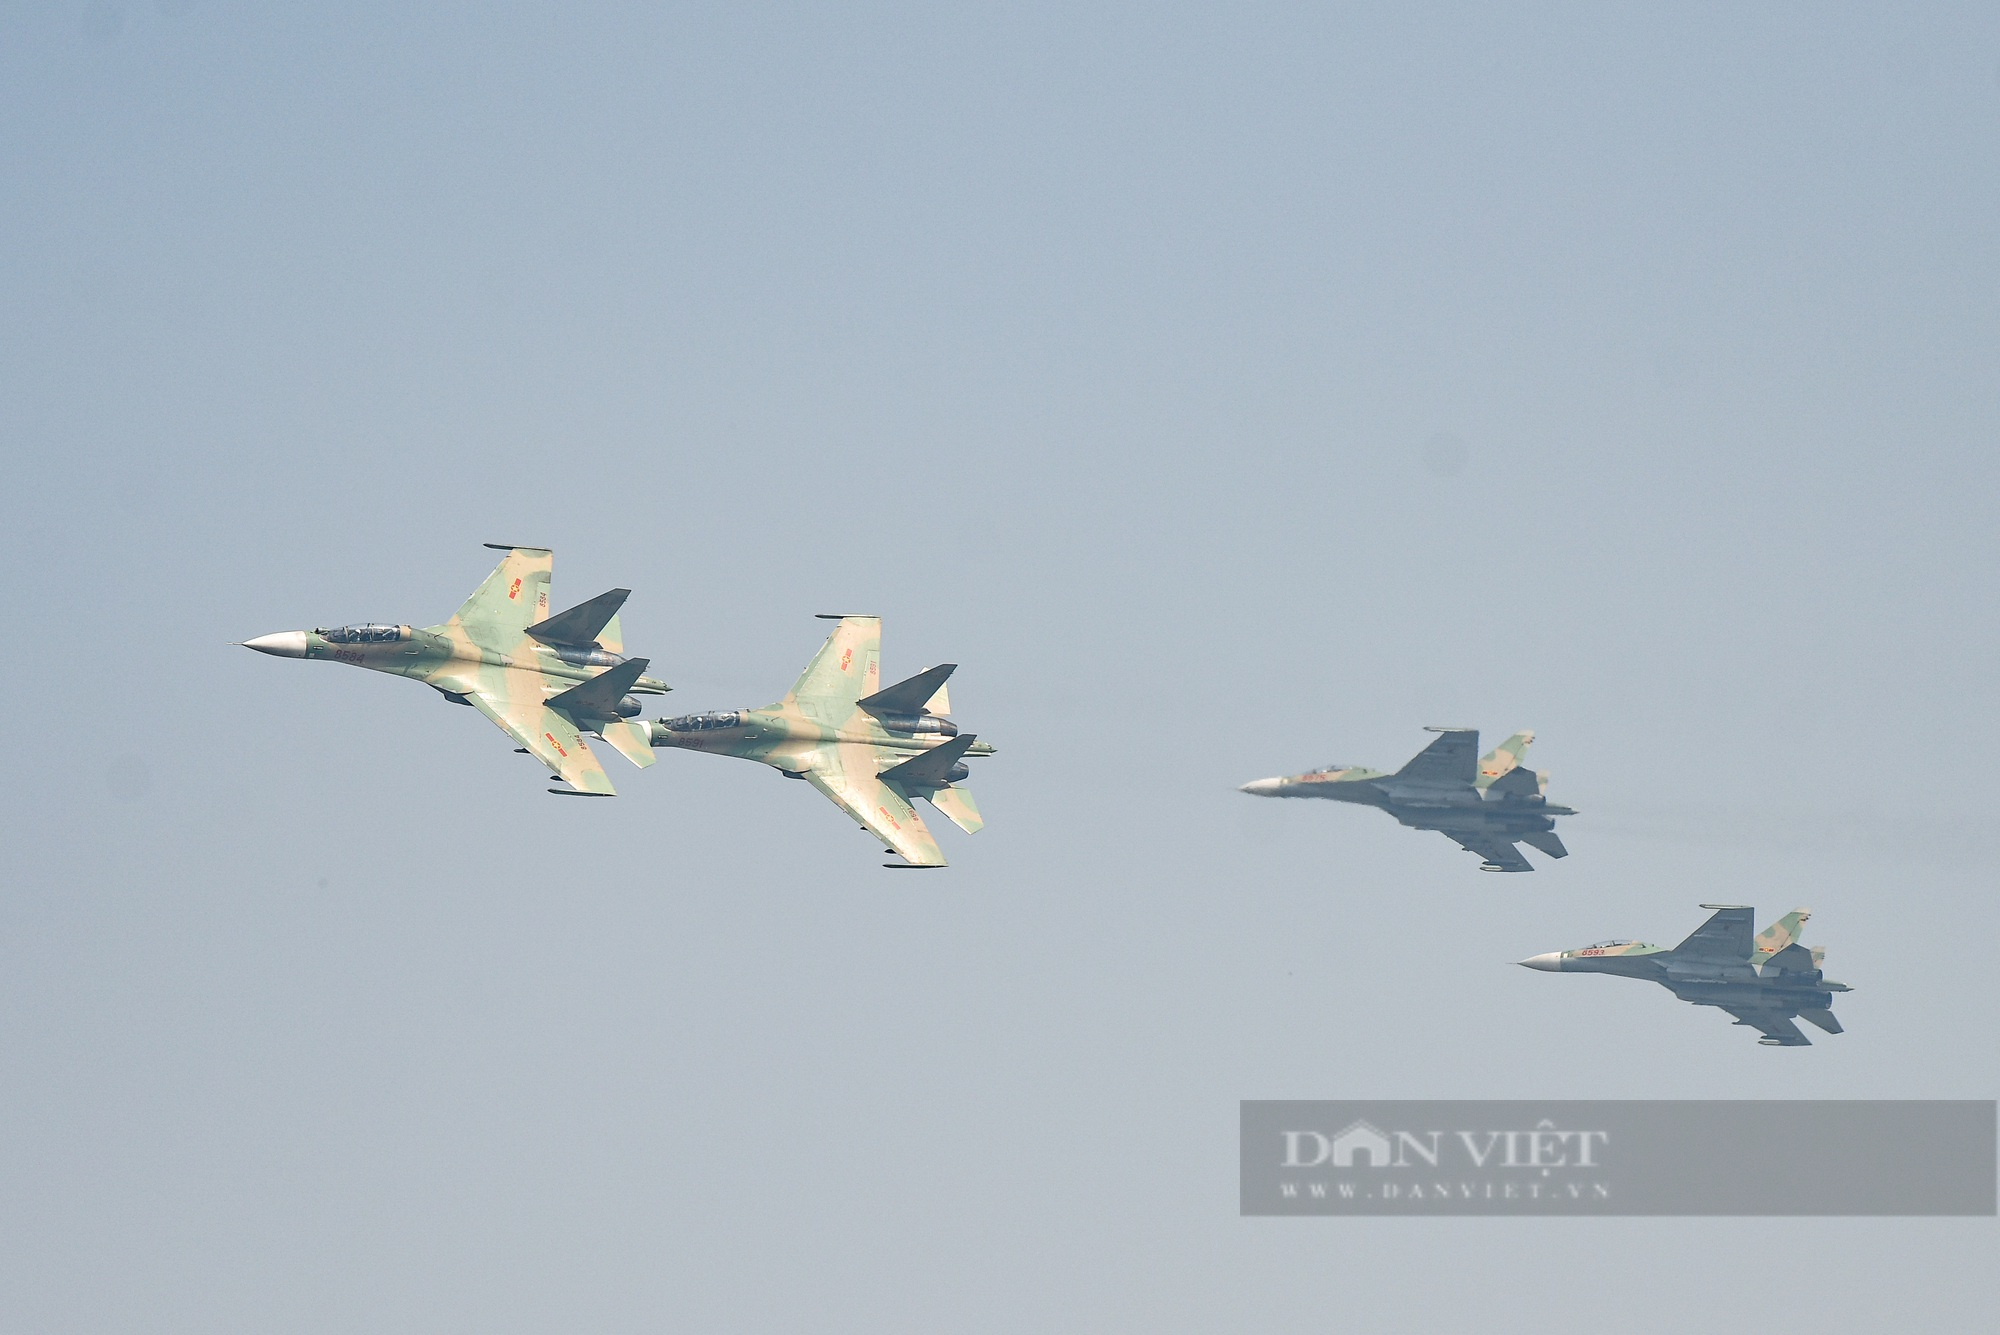 Ấn tượng hình ảnh &quot;Hổ mang chúa&quot; Su-30 bay luợn trên bầu trời Hà Nội - Ảnh 2.